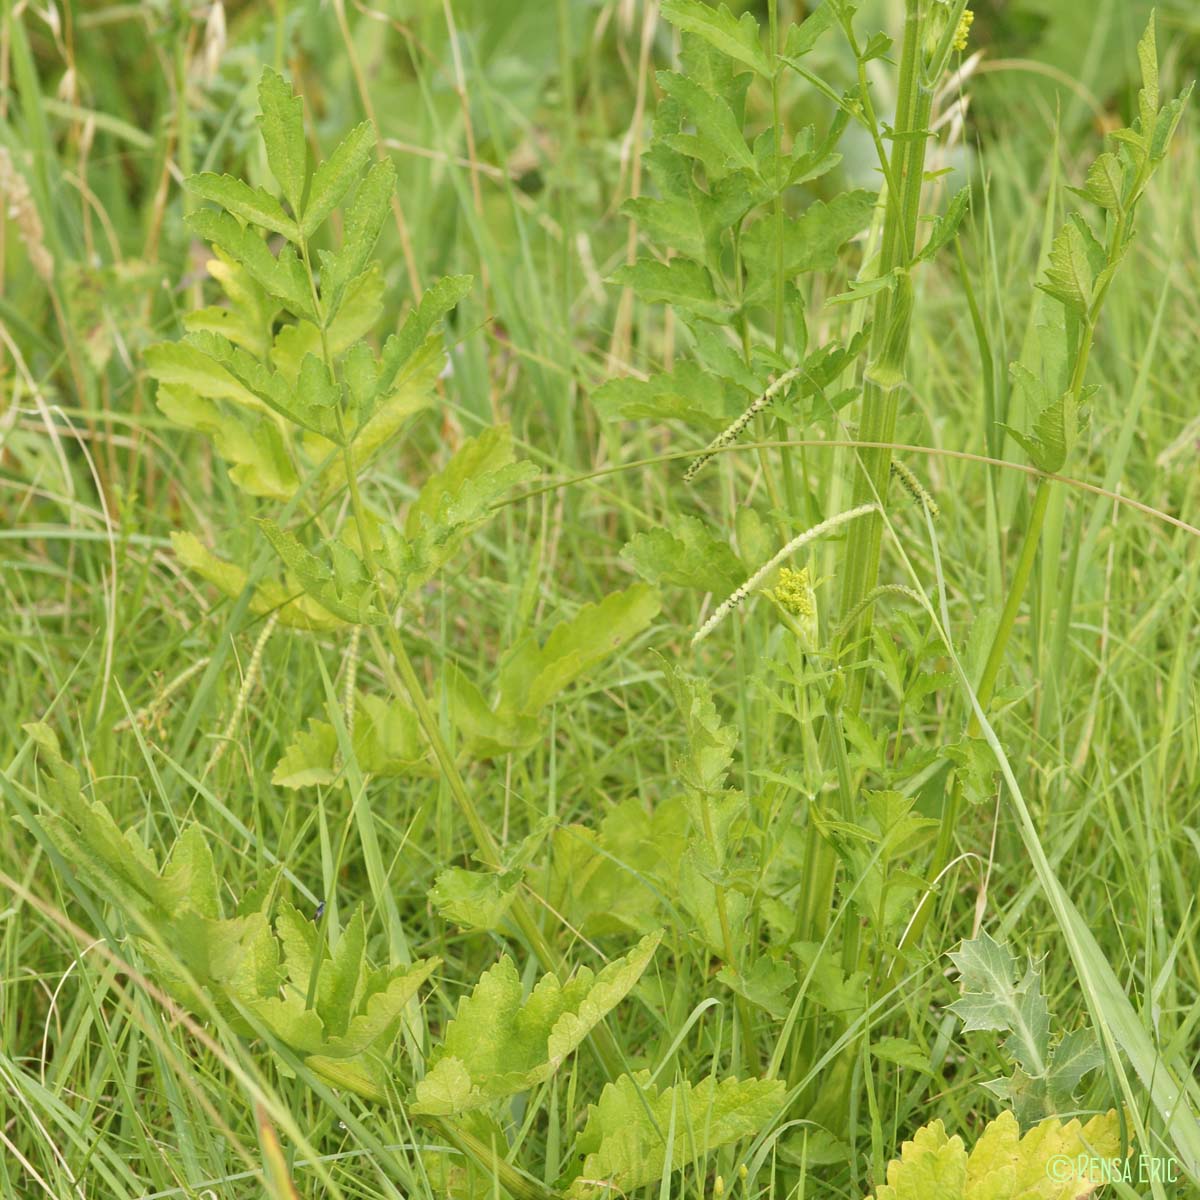 Panais brûlant - Pastinaca sativa subsp. urens